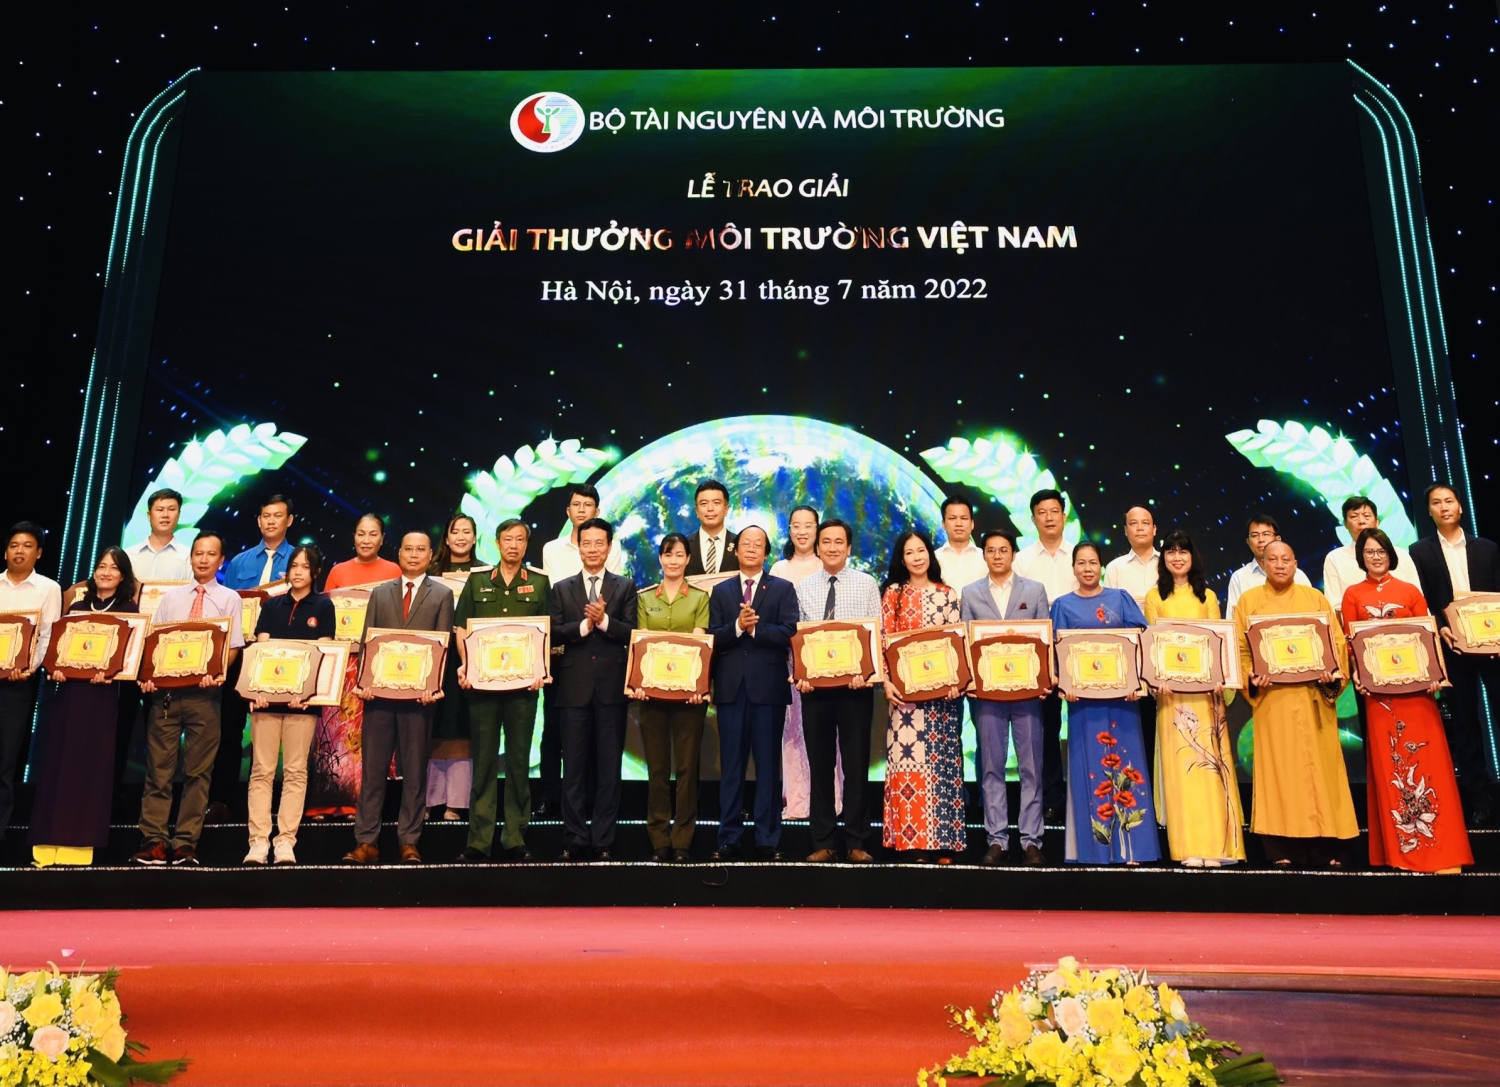 Quang cảnh lễ trao giải thưởng Môi trường Việt Nam năm 2021.